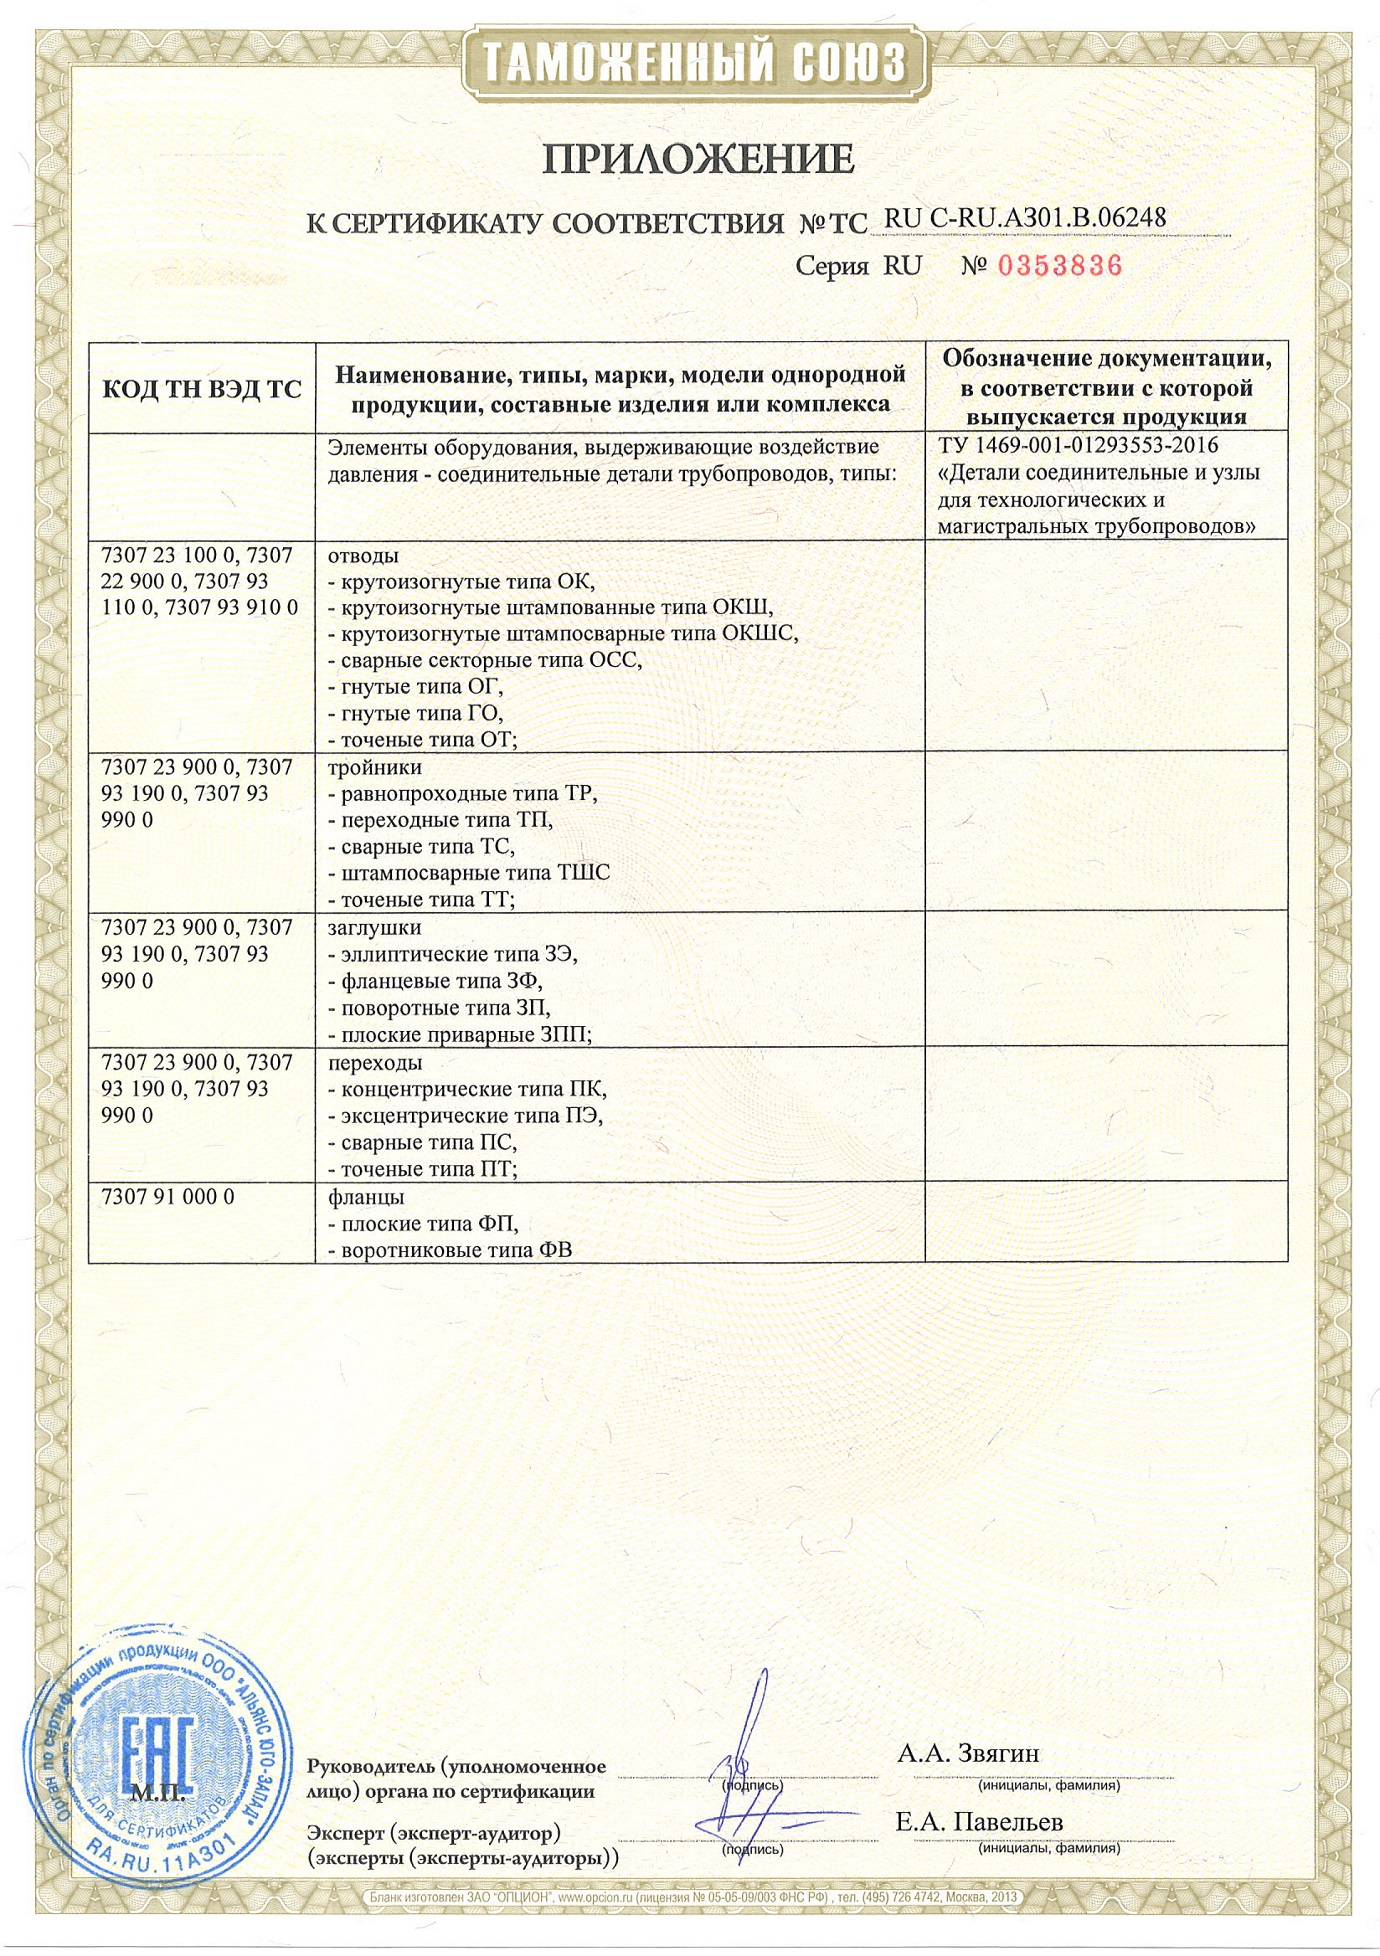 Приложение к сертификату соответствия ТР ТС